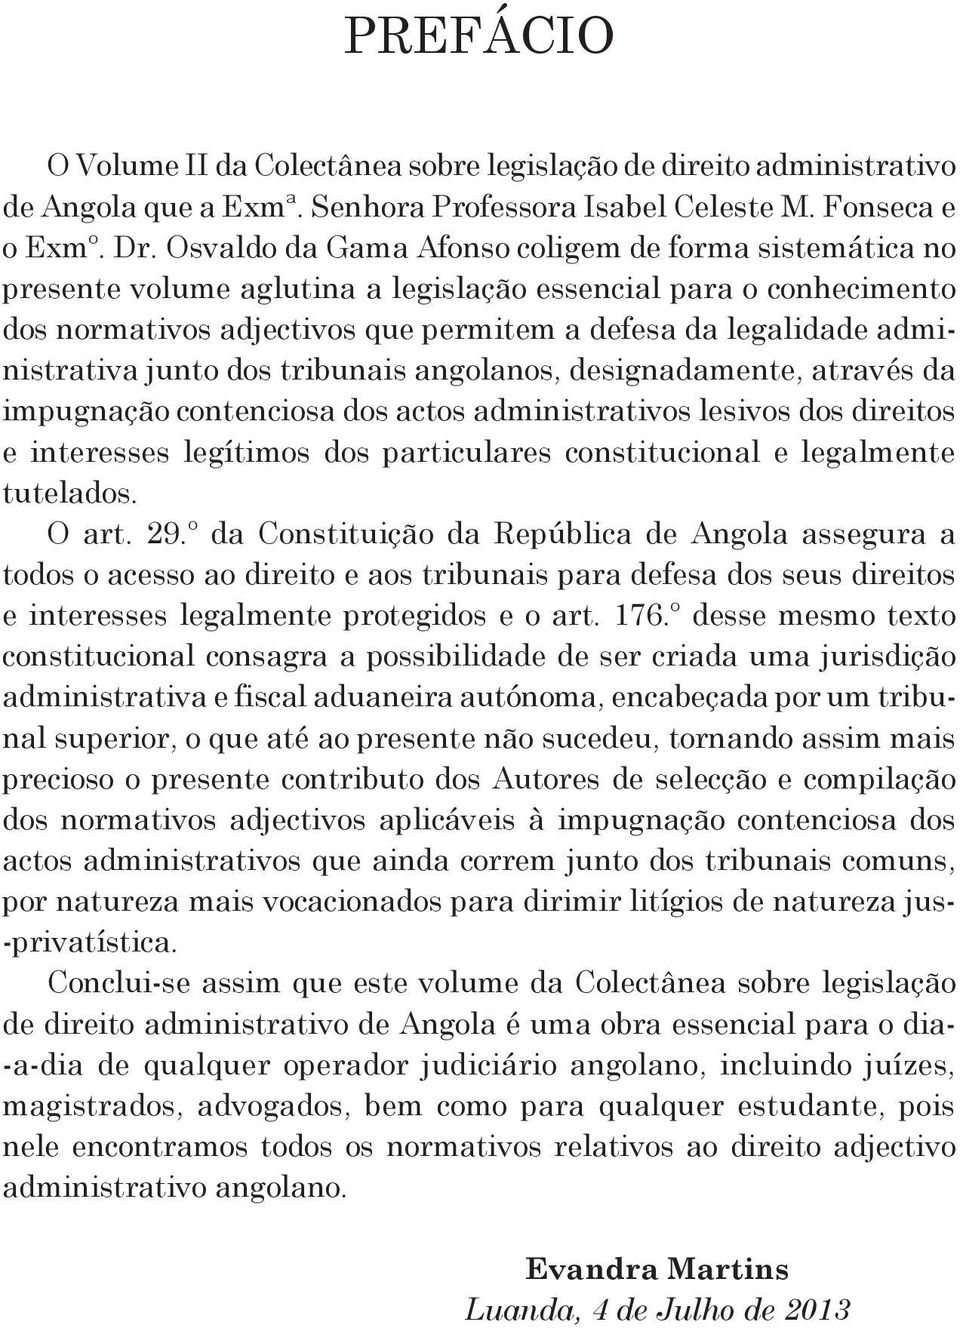 junto dos tribunais angolanos, designadamente, através da impugnação contenciosa dos actos administrativos lesivos dos direitos e interesses legítimos dos particulares constitucional e legalmente